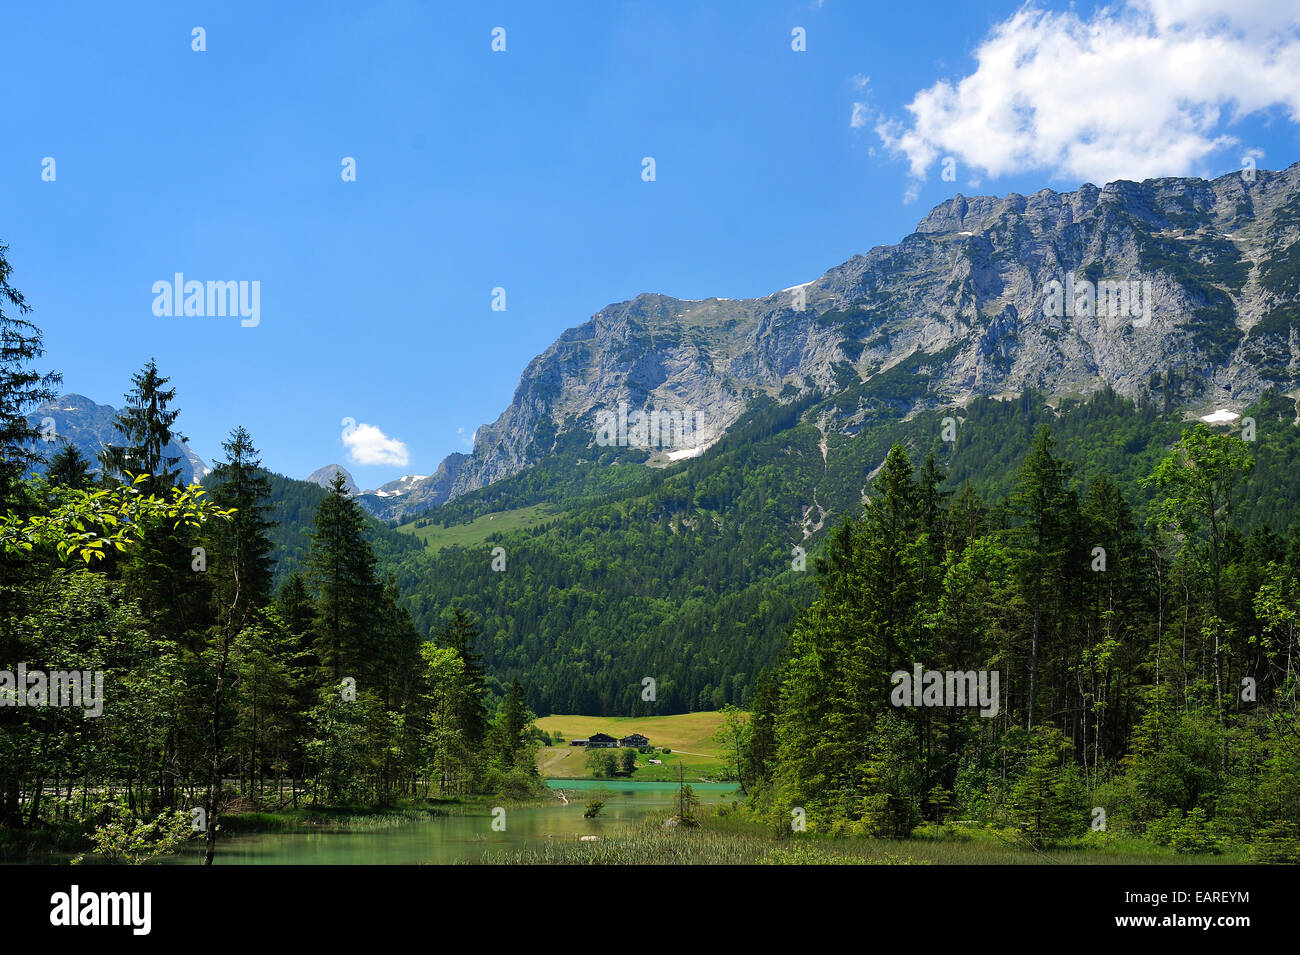 Reiter Alpes, el lago Hintersee verde brillante en la parte delantera, Ramsau bei Berchtesgaden, distrito de Berchtesgadener Land Foto de stock